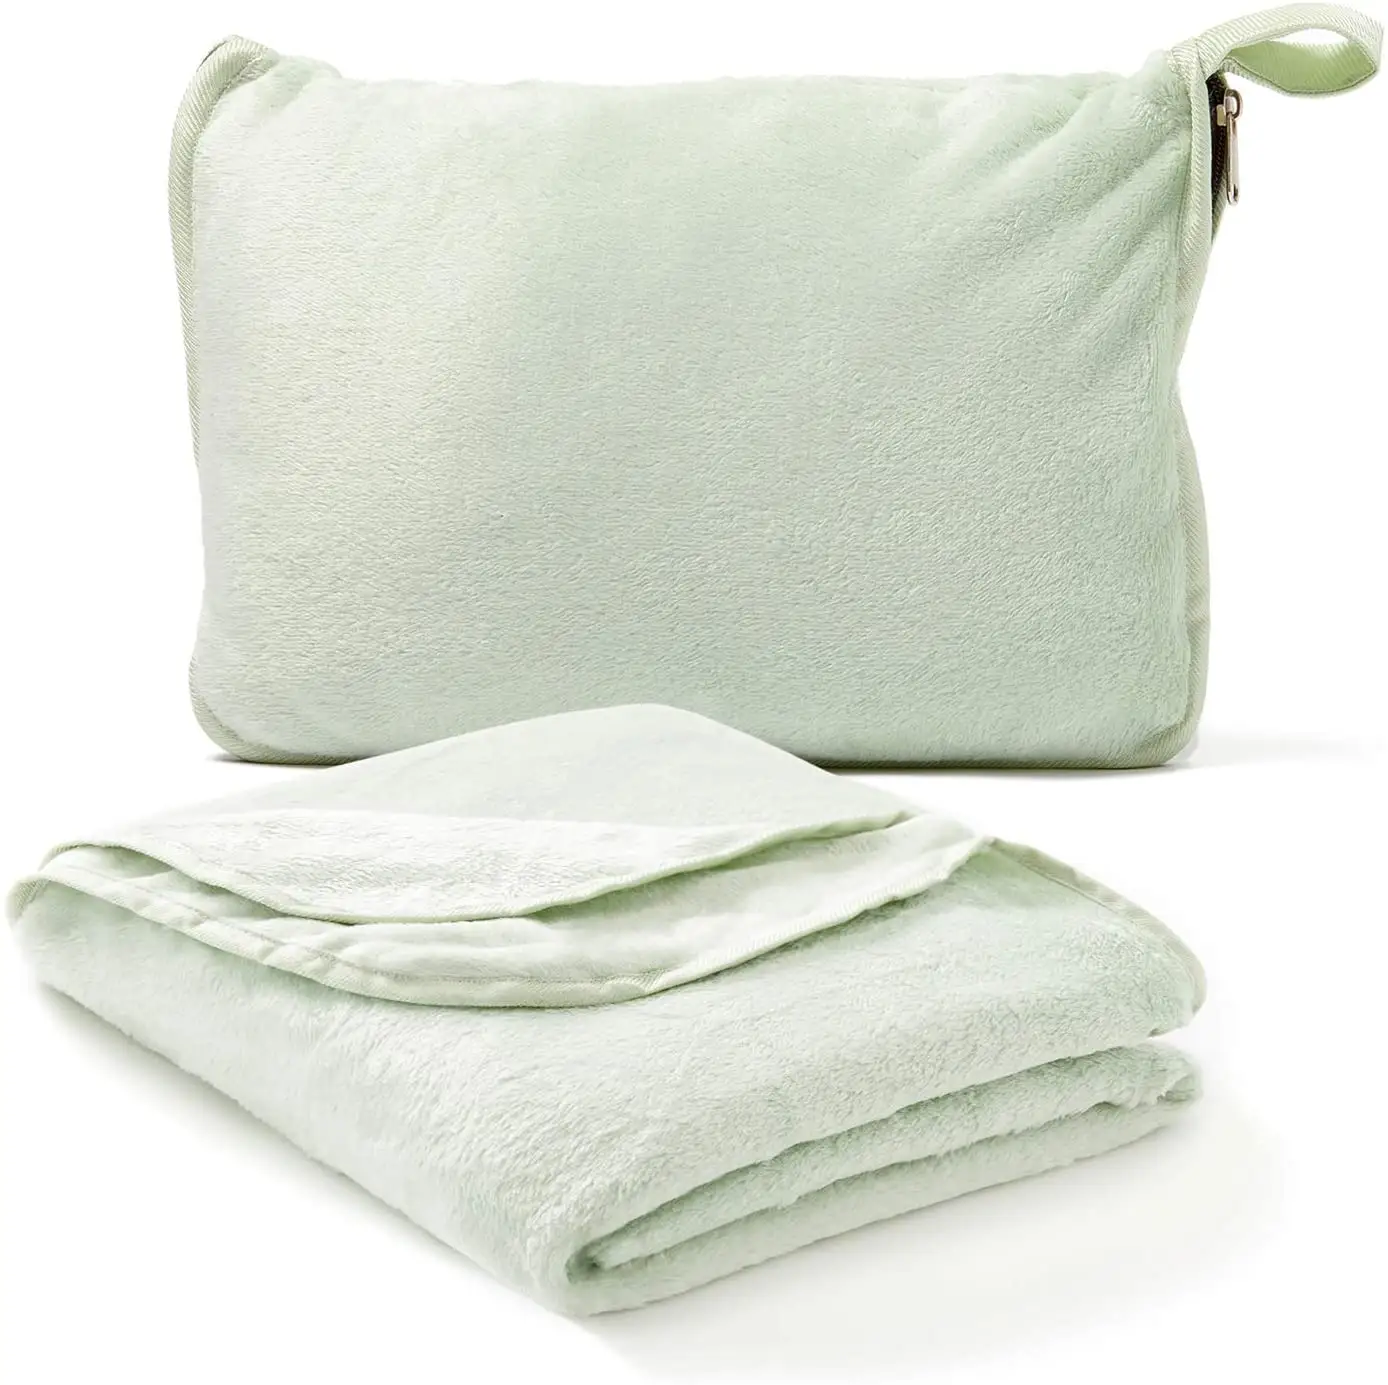 Оптовая продажа, легкие фланелевые флисовые дорожные одеяла и подушки, переносные складные 4 в 1 дорожные одеяла в сумке